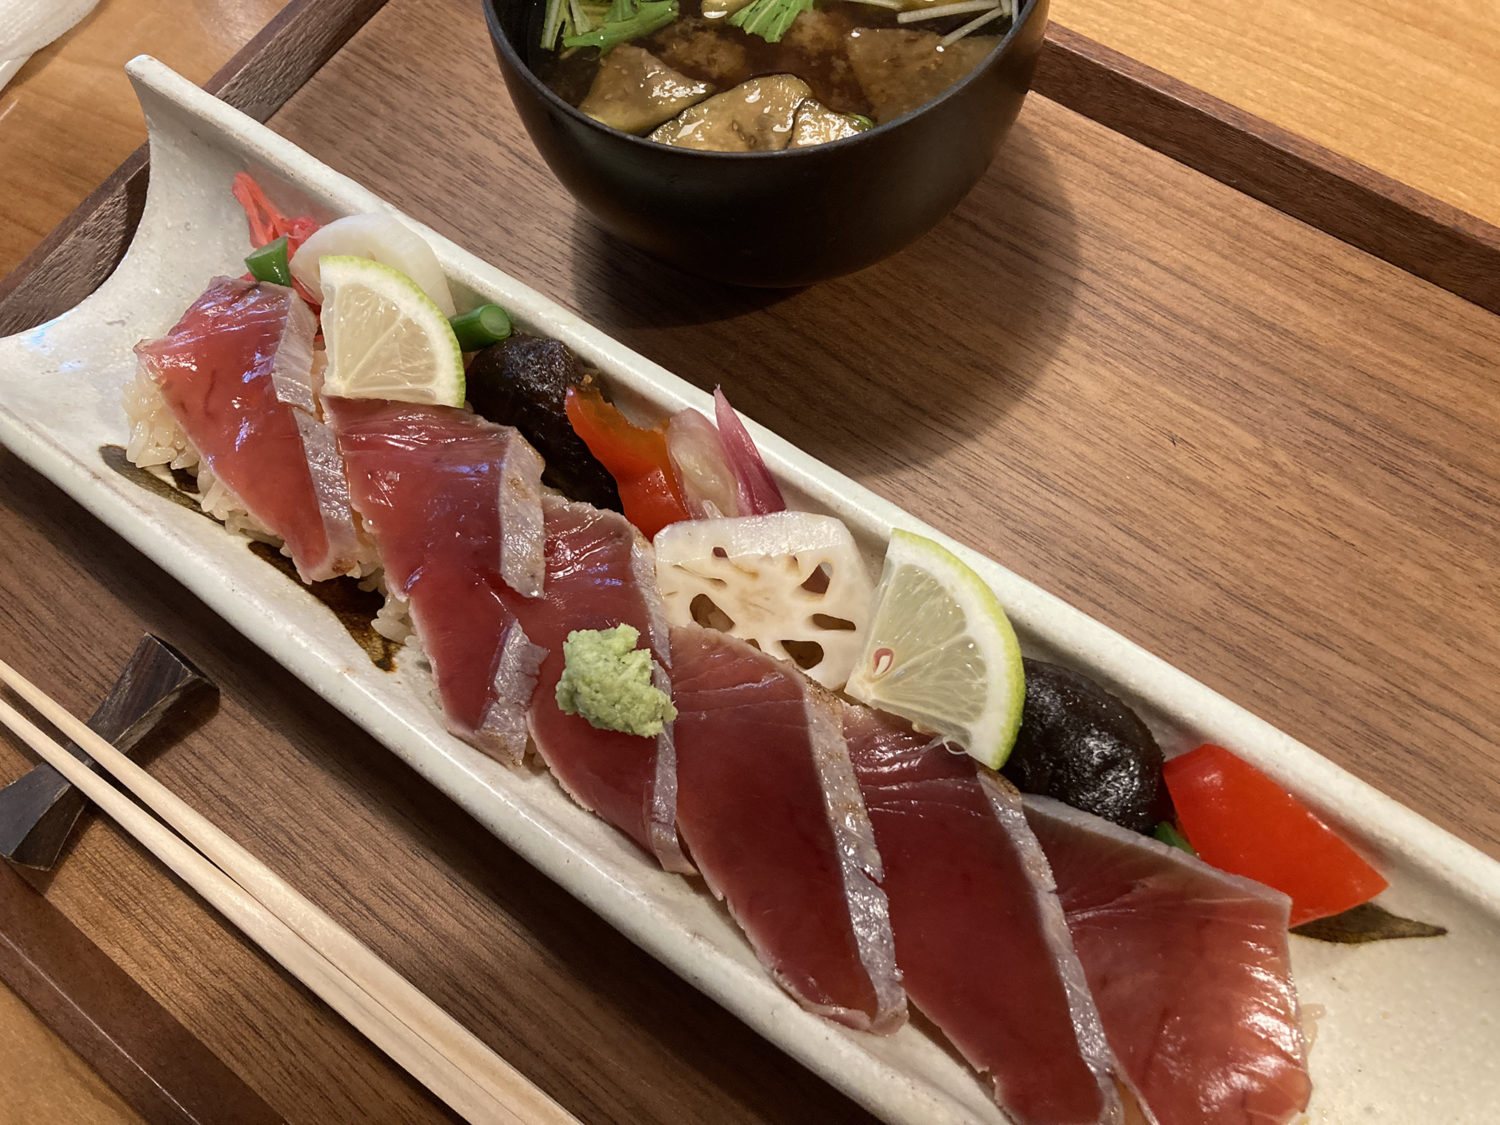 工房レストラン「wakuden MORI」
丹後魚の黒寿司